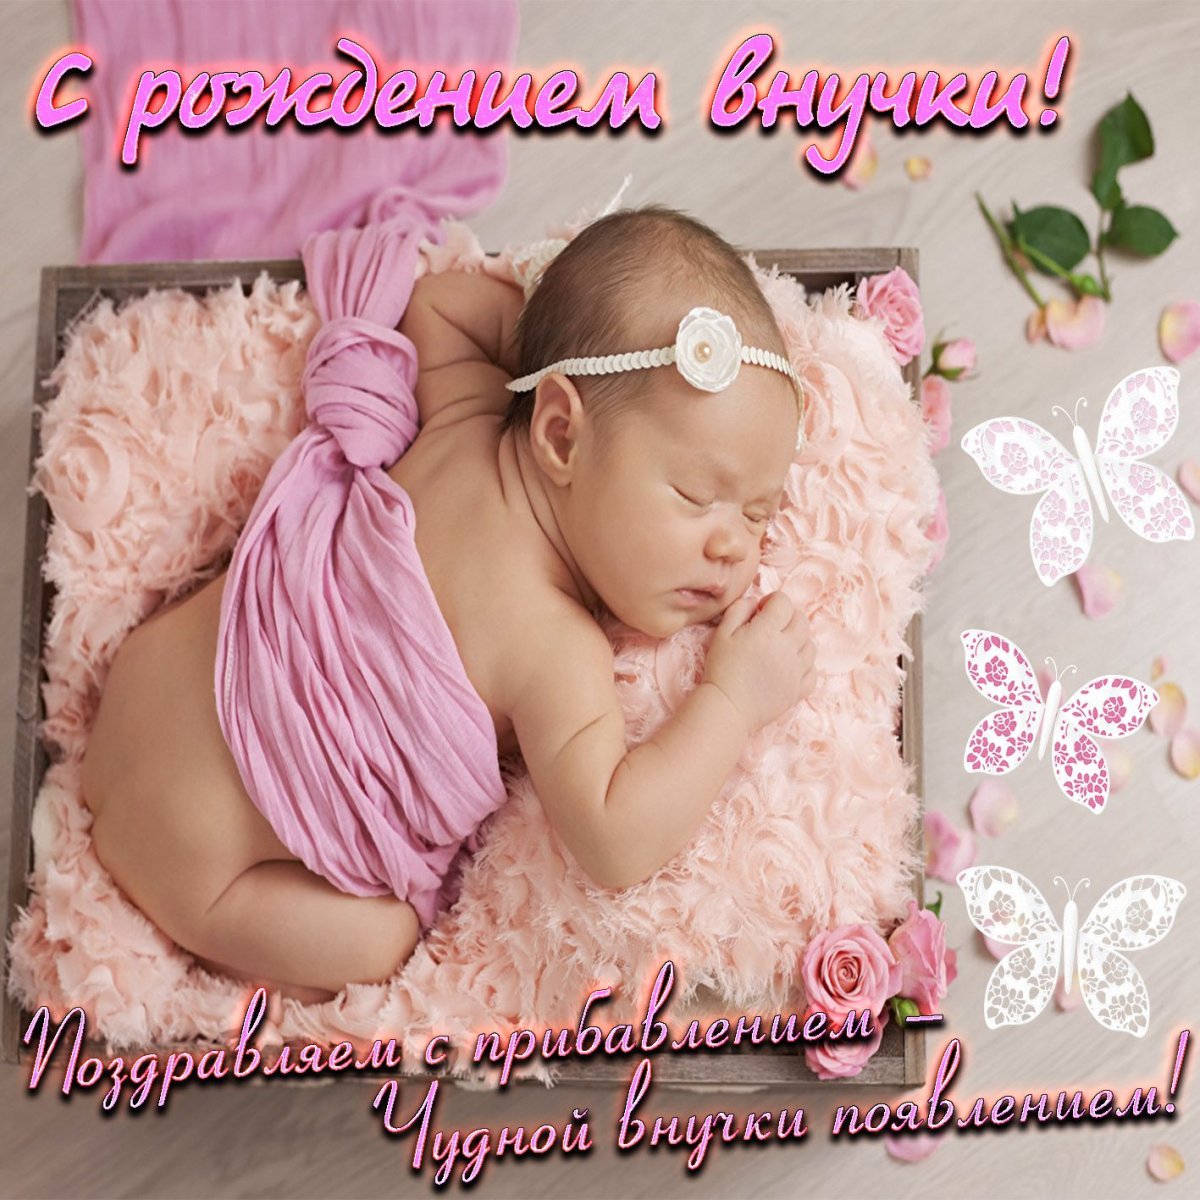 Красивые картинки С рождением внучки! (50 открыток)